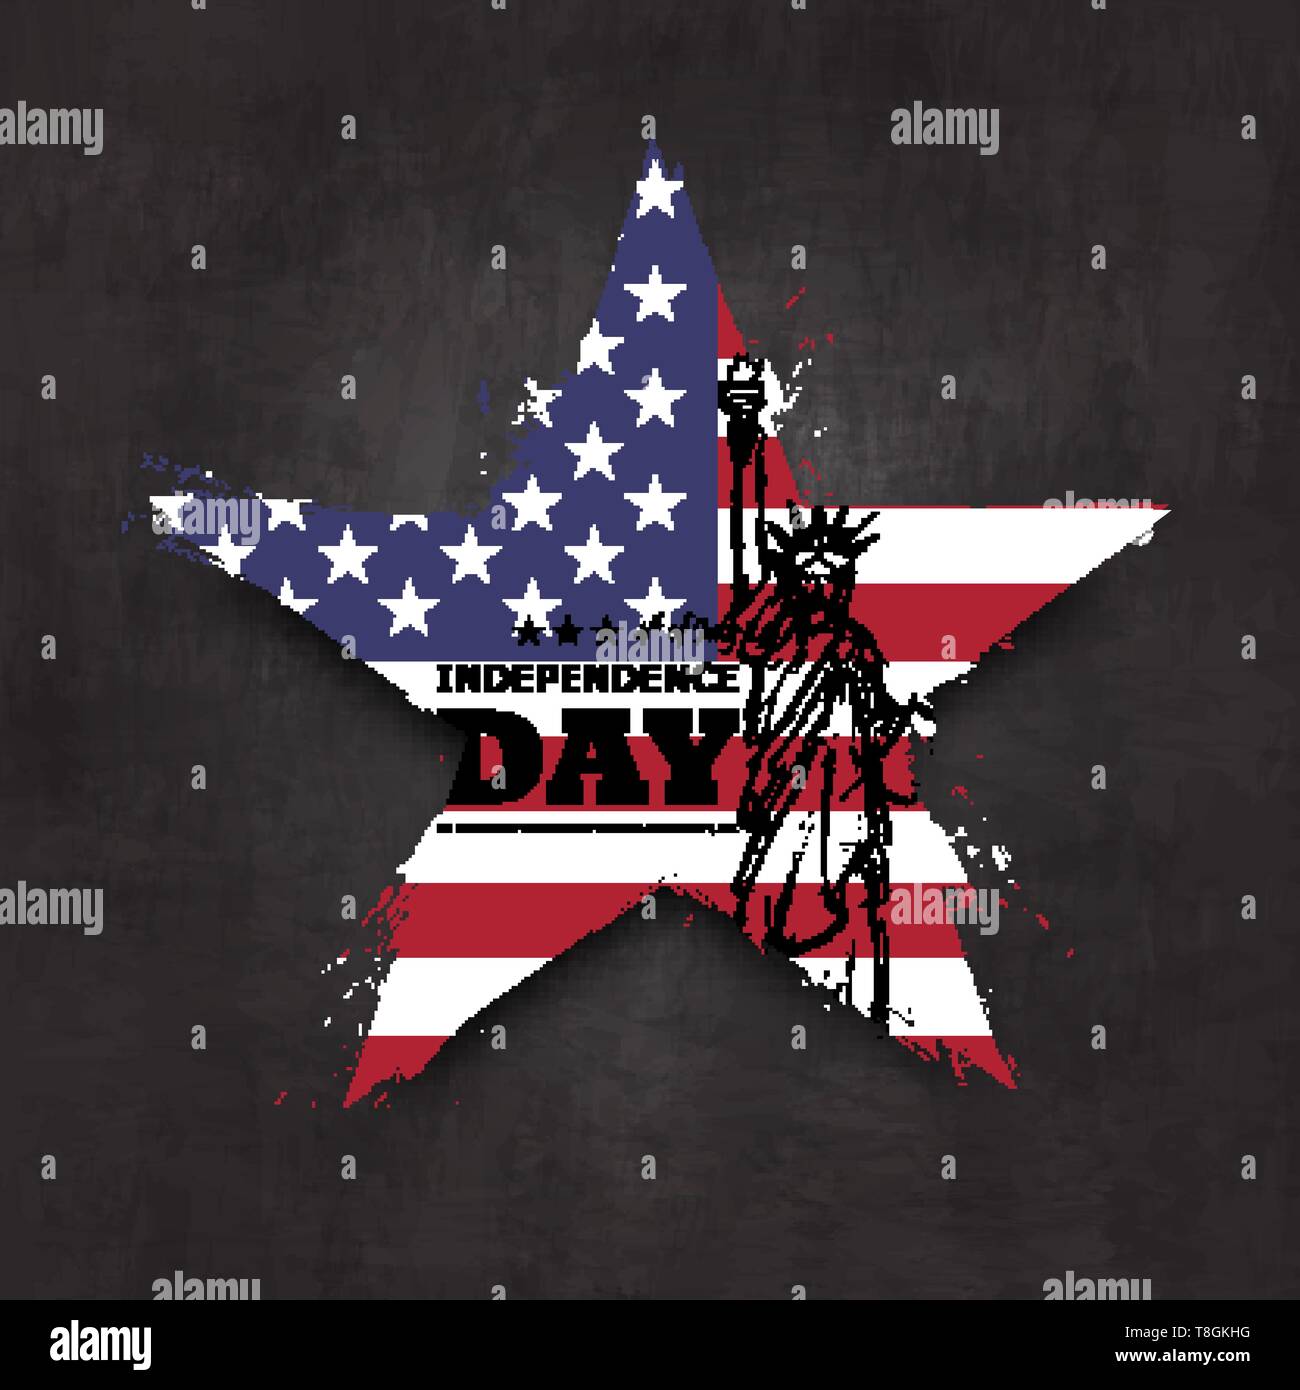 4 juillet Jour de l'indépendance des États-Unis . Grunge star shape avec drapeau amérique et statue de la liberté design dessin on chalkboard texture background . Vect Illustration de Vecteur